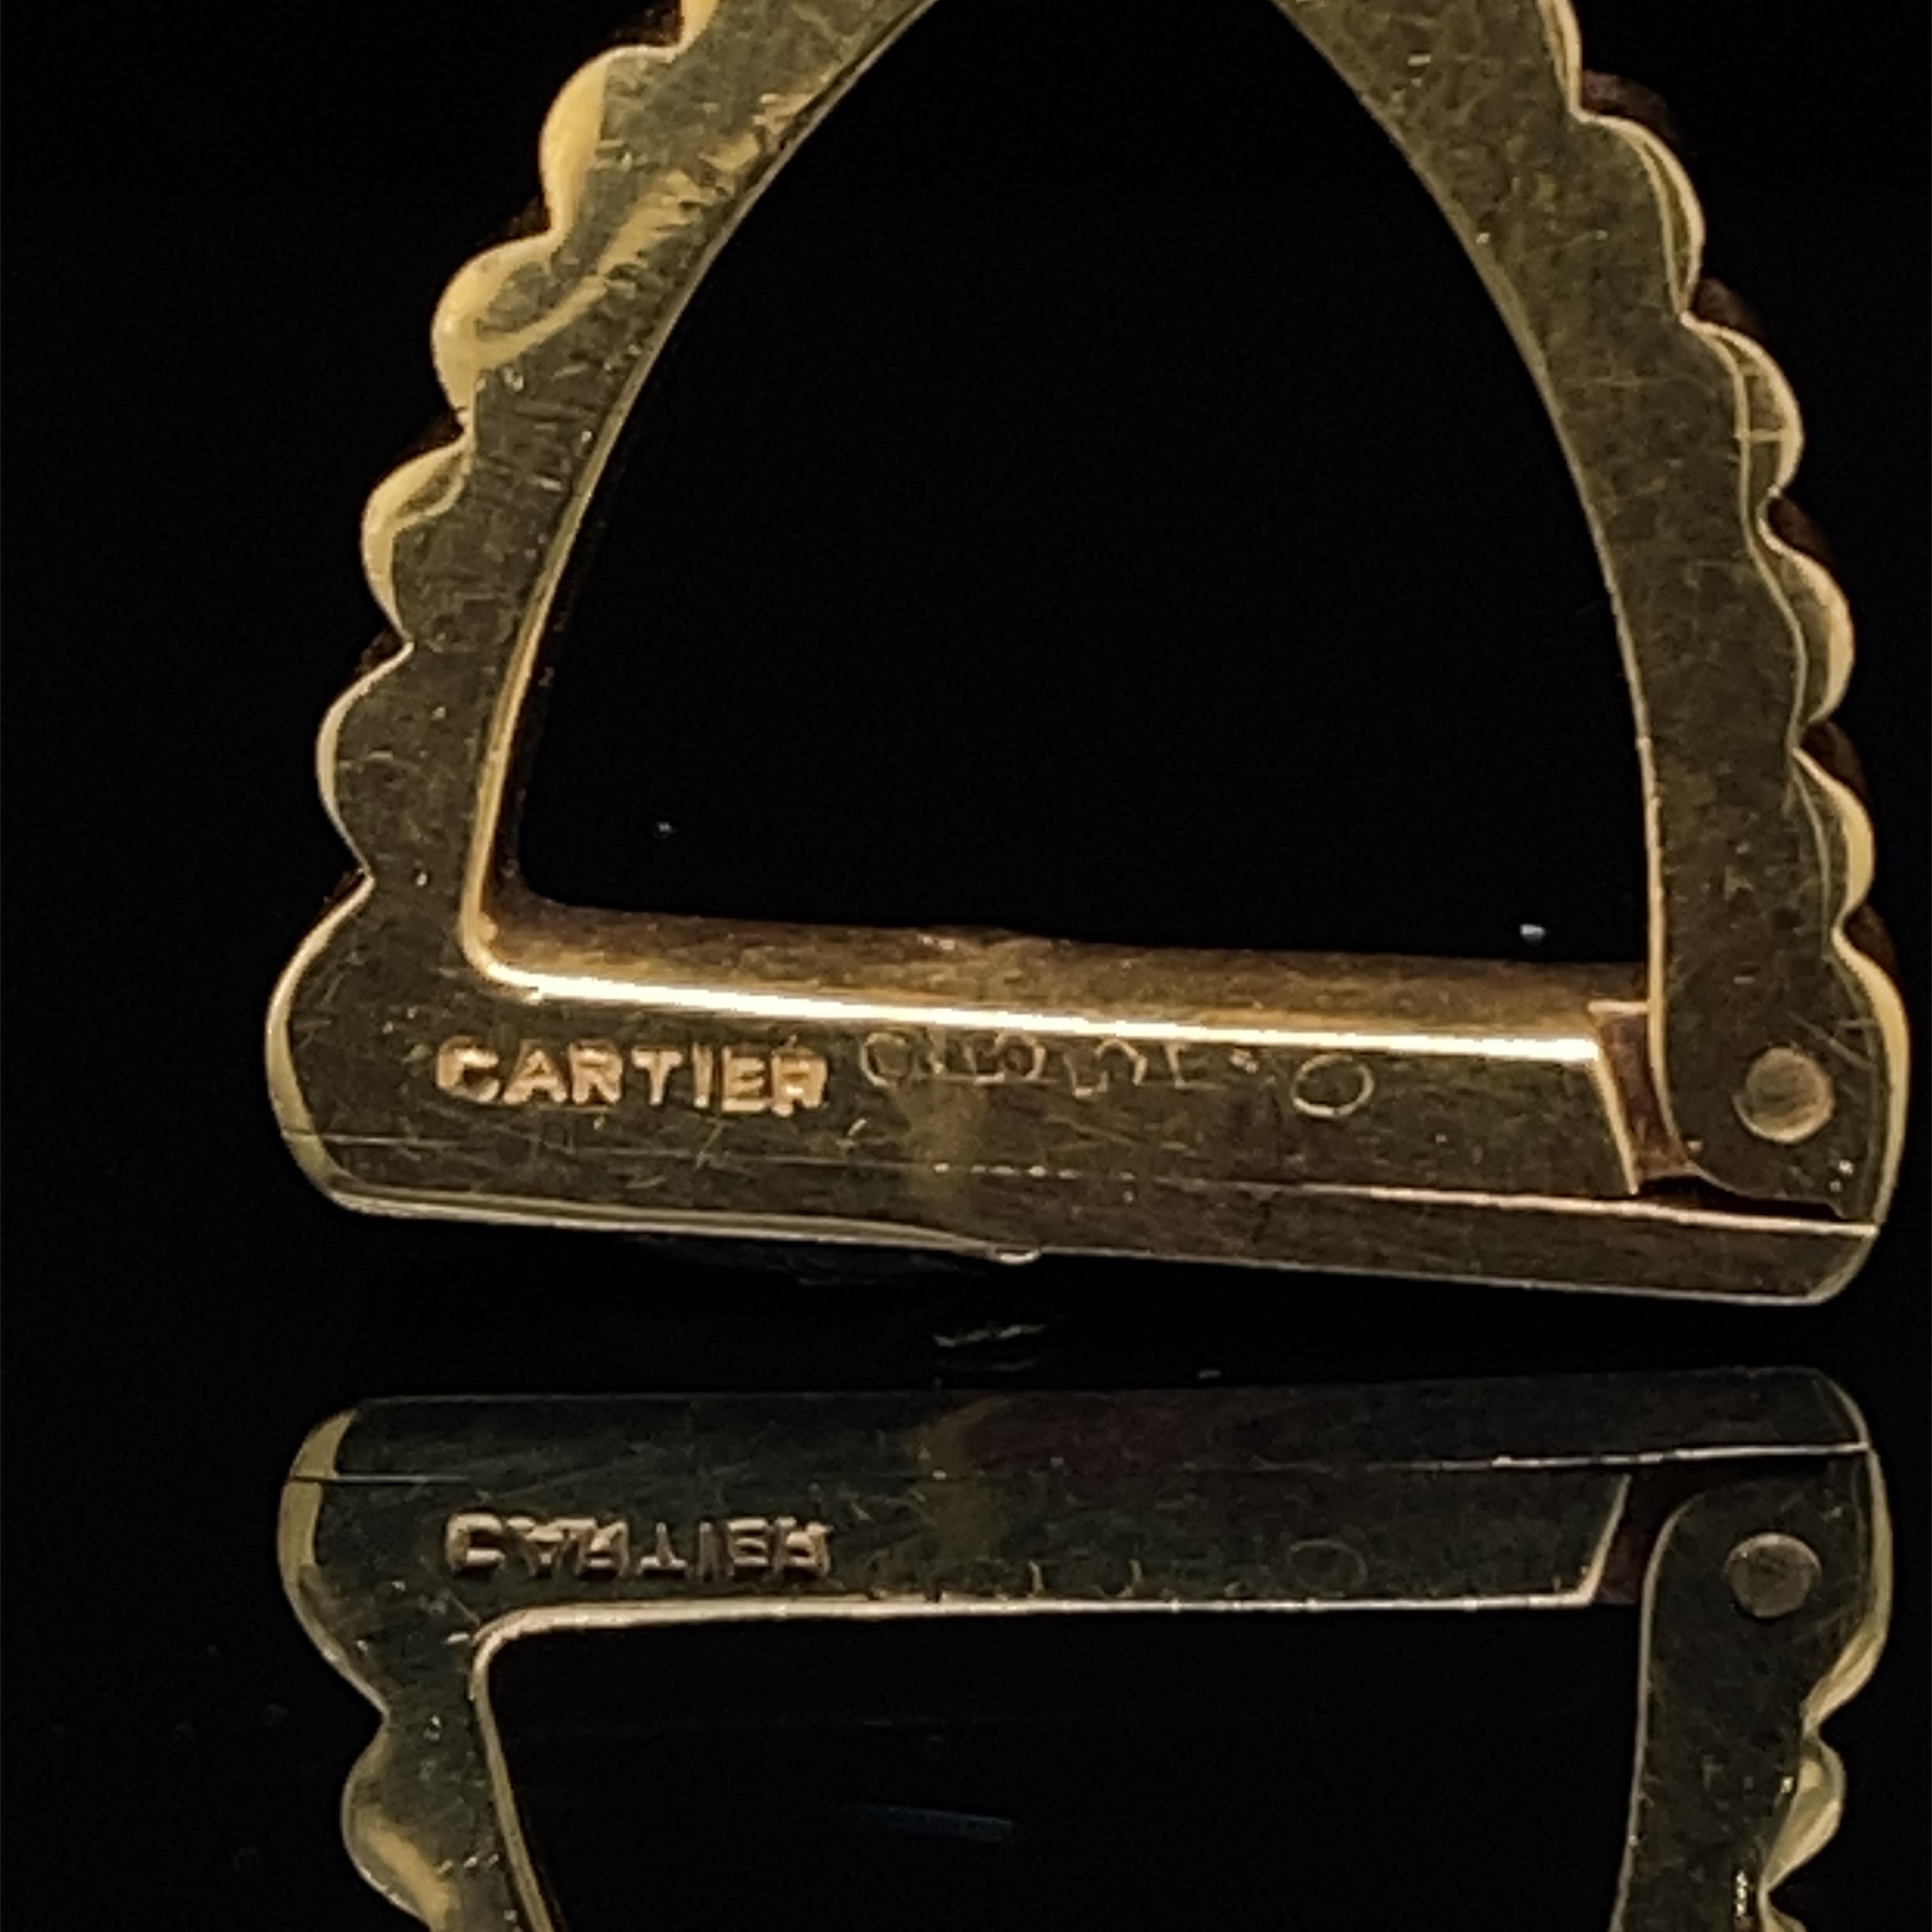 Une paire vintage de boutons de manchette étrier Cartier en or jaune 18 carats, vers 1950.

Chaque bouton de manchette exquis présente un design effilé et cannelé, avec une belle finition polie et une patine que l'on ne trouve que sur l'or